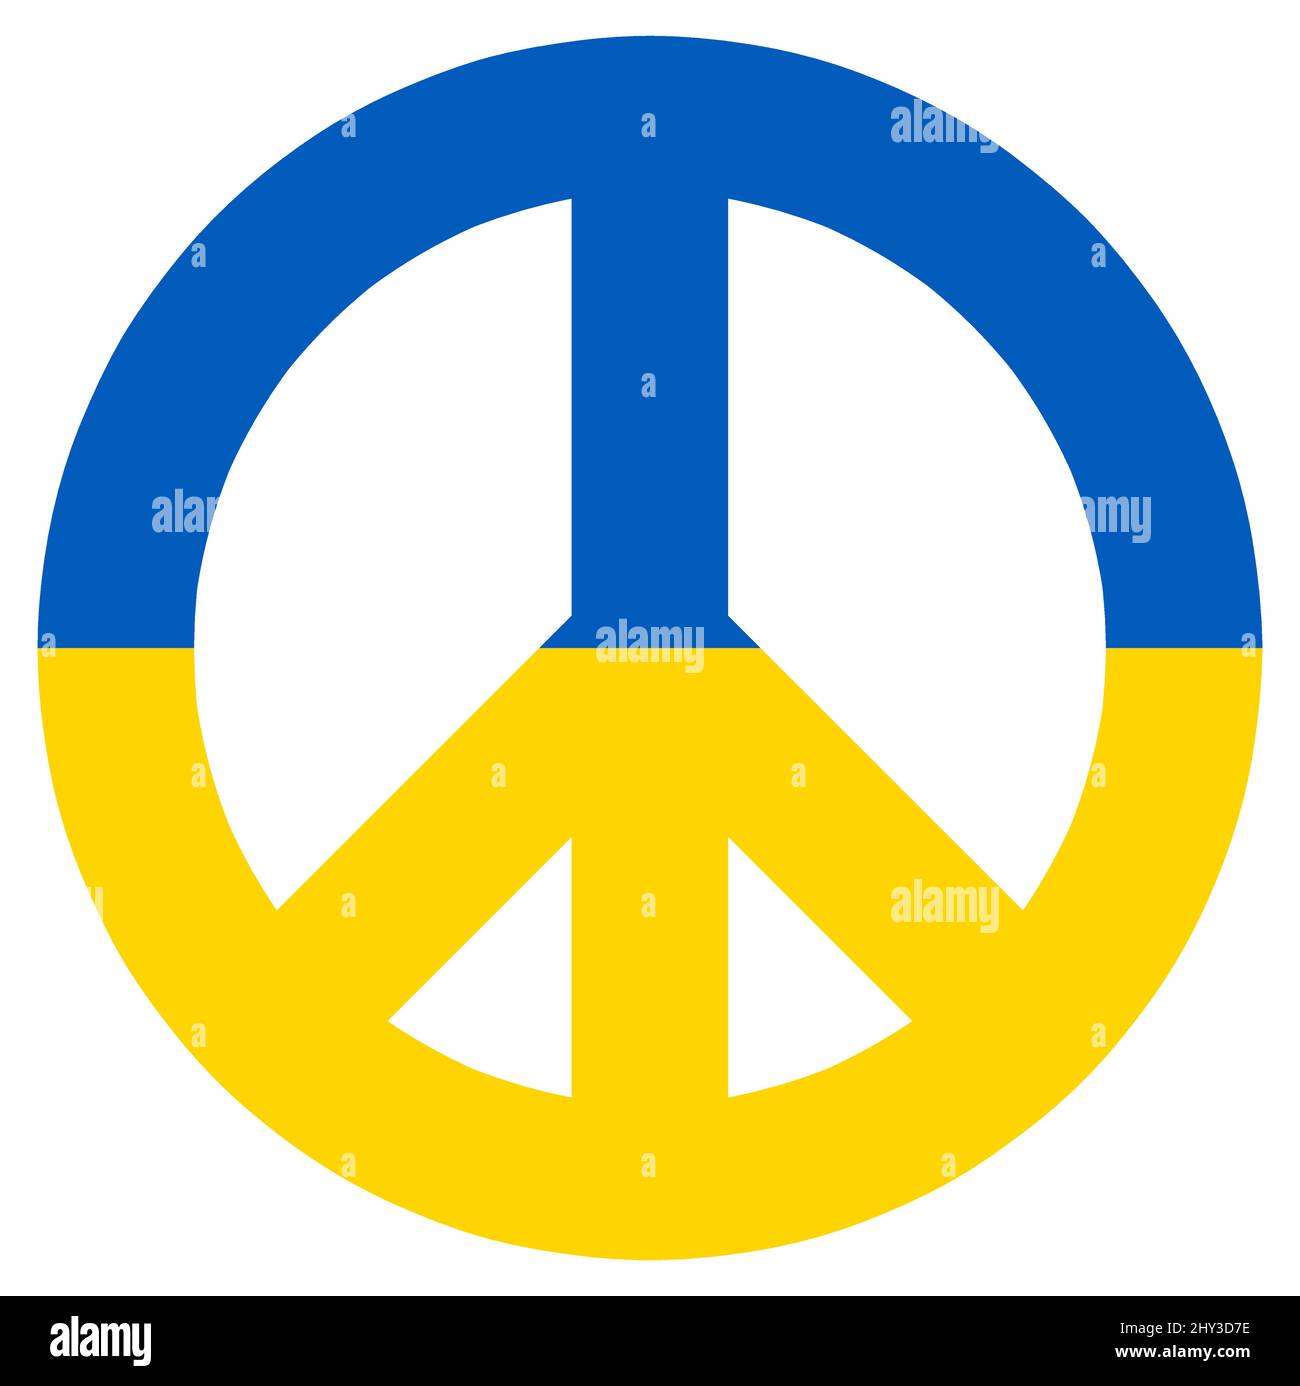 illustrazione vettoriale eps con segno di pace colorato con colori paese di ucraina per il conflitto con la russia 2022 Illustrazione Vettoriale